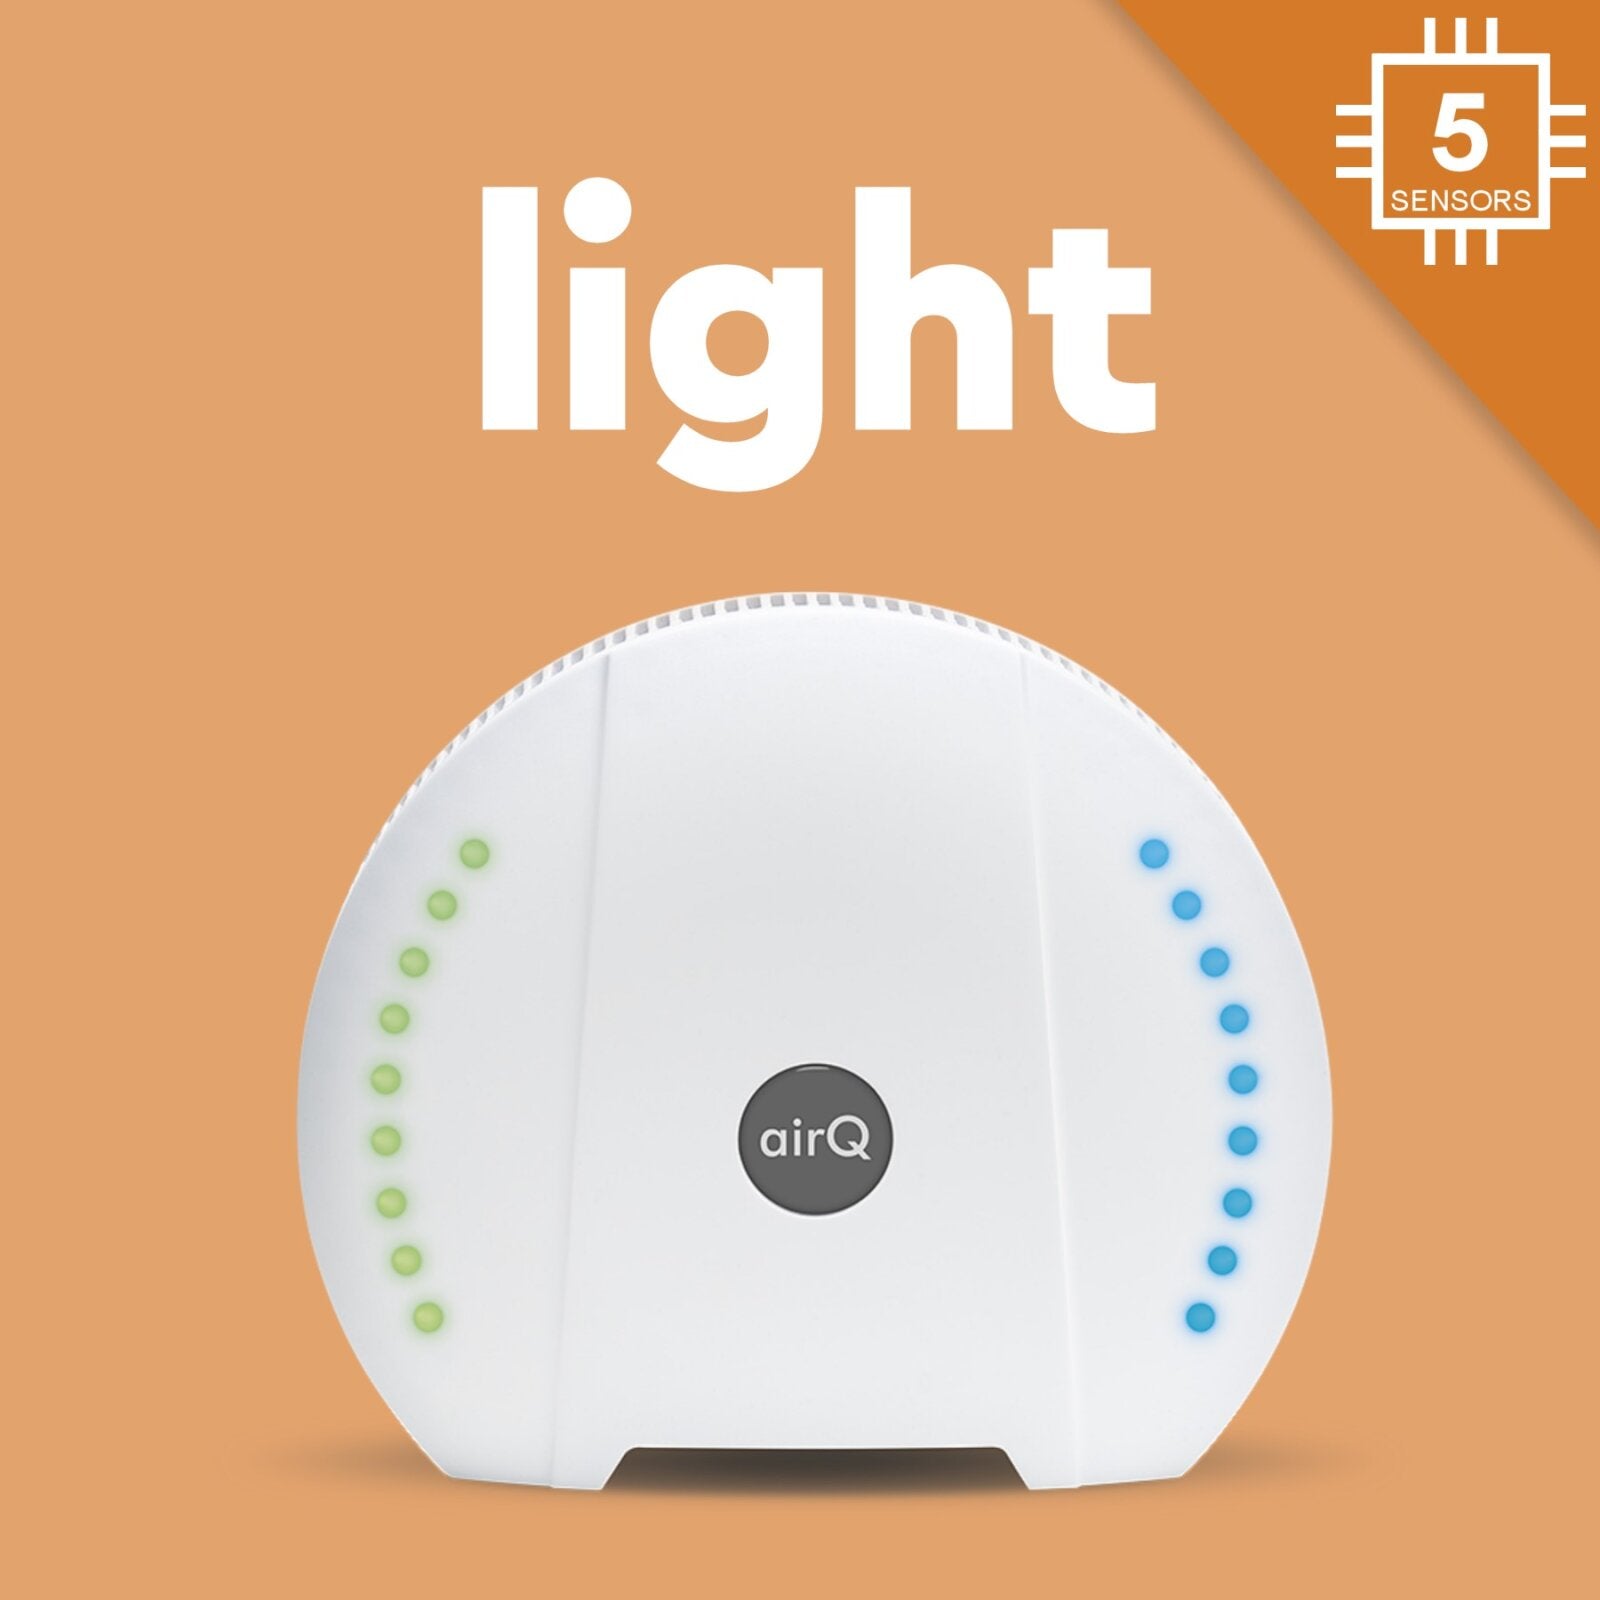 air-Q light | Luftmessgerät für Einsteiger